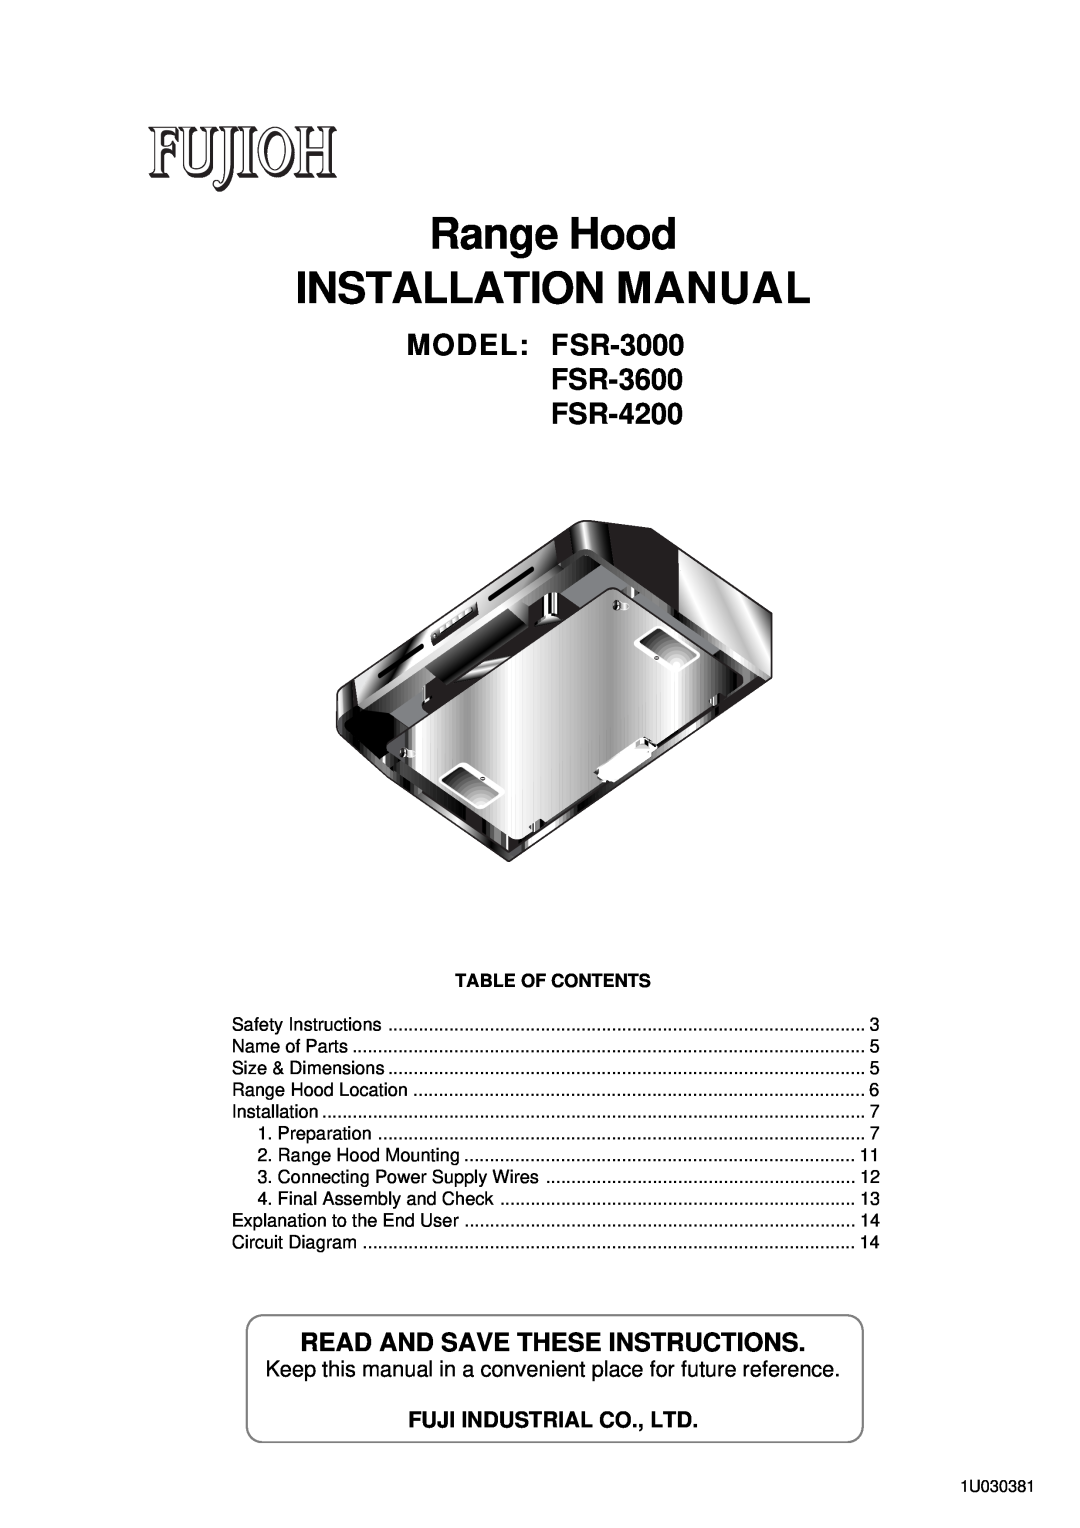 Fujioh installation manual MODEL FSR-3000 FSR-3600 FSR-4200, Range Hood INSTALLATION MANUAL, Table Of Contents 